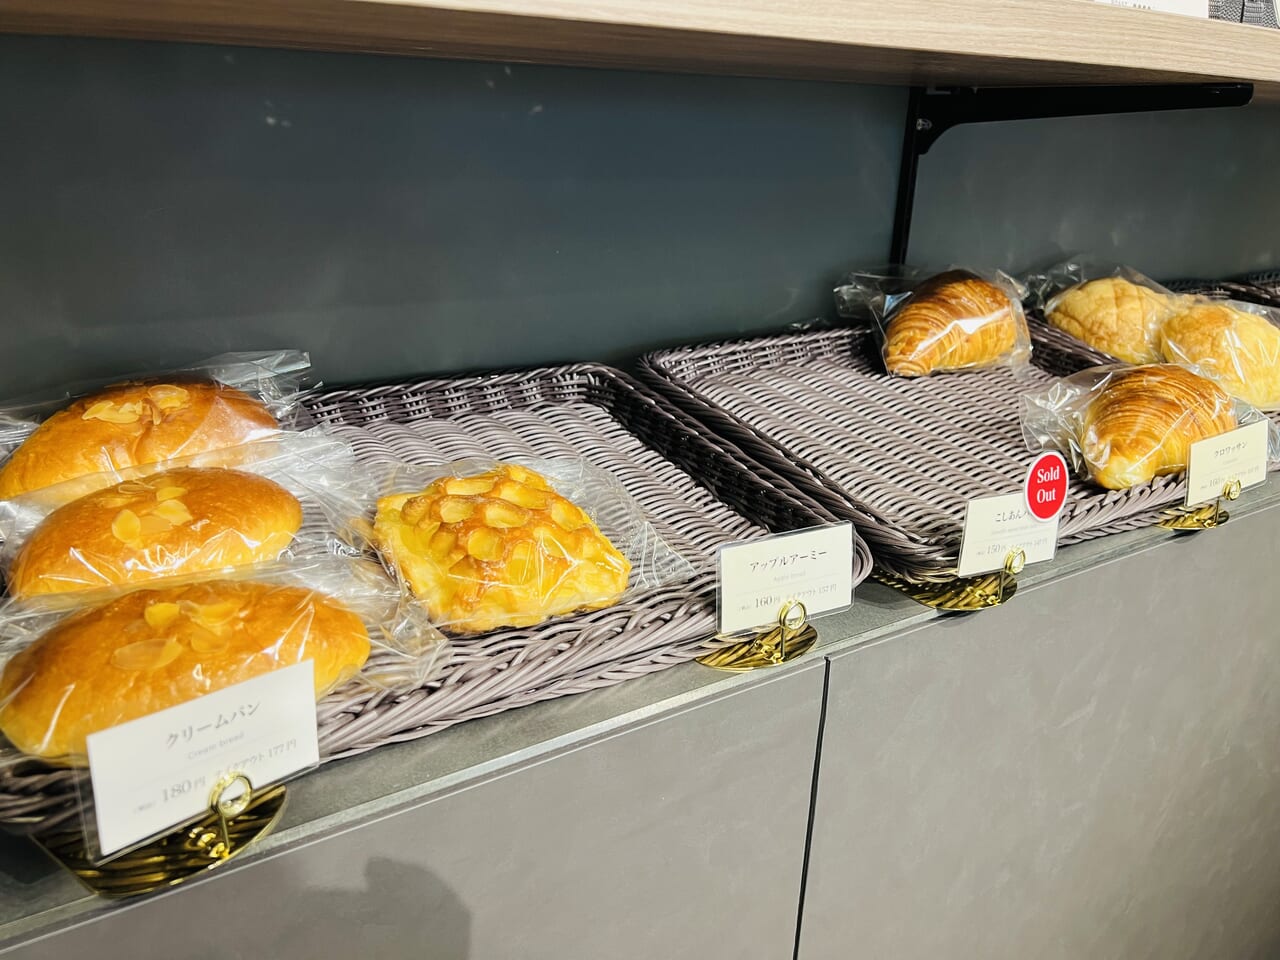 2023年11月15日にオープンしたボタニカルカフェ「konoha」で提供されている「はるのテラス」のパン